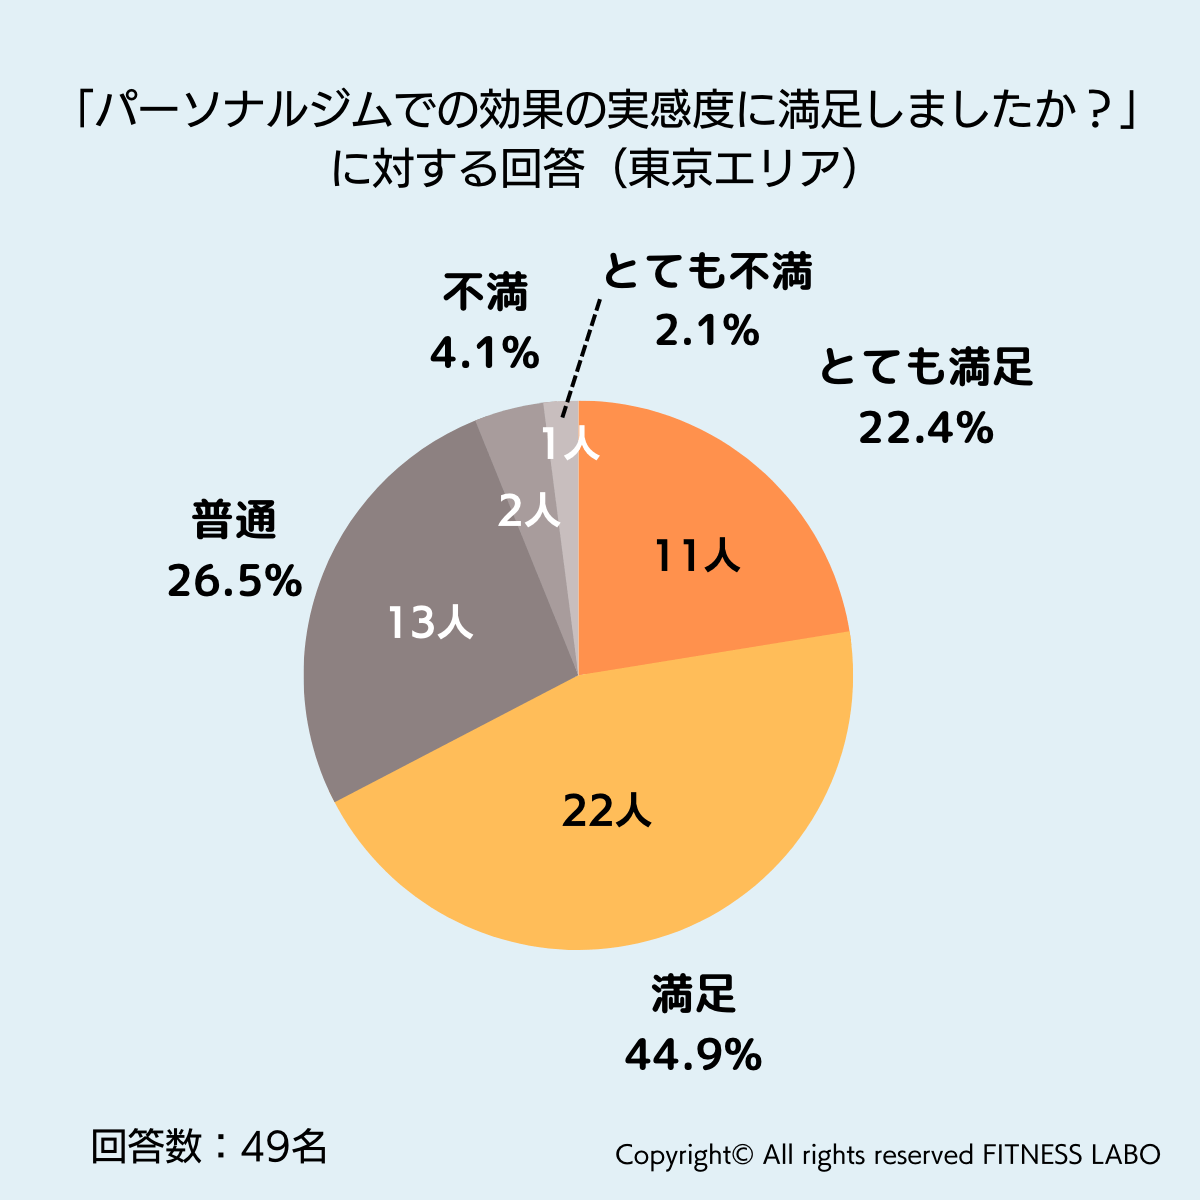 東京のパーソナルジムに関するアンケート調査結果の円グラフ